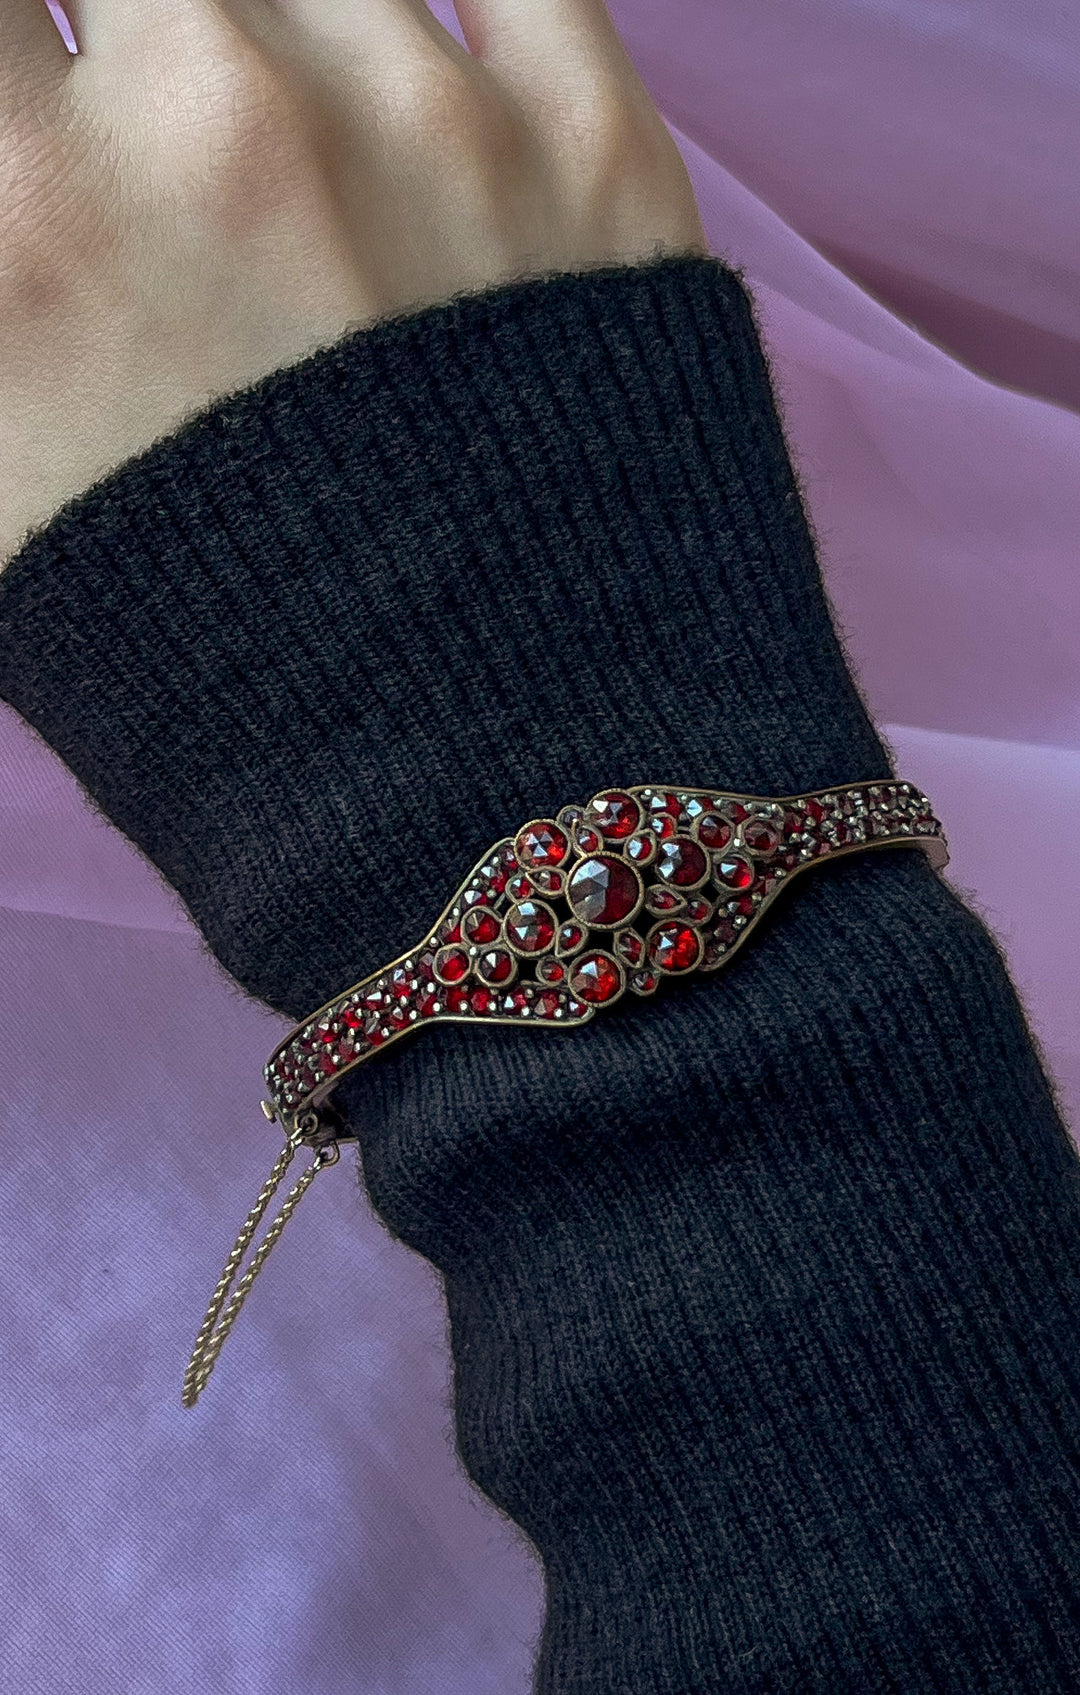 Lovely Bohemian Garnet Bangle Bracelet with Cartouche Medallion c. 1890